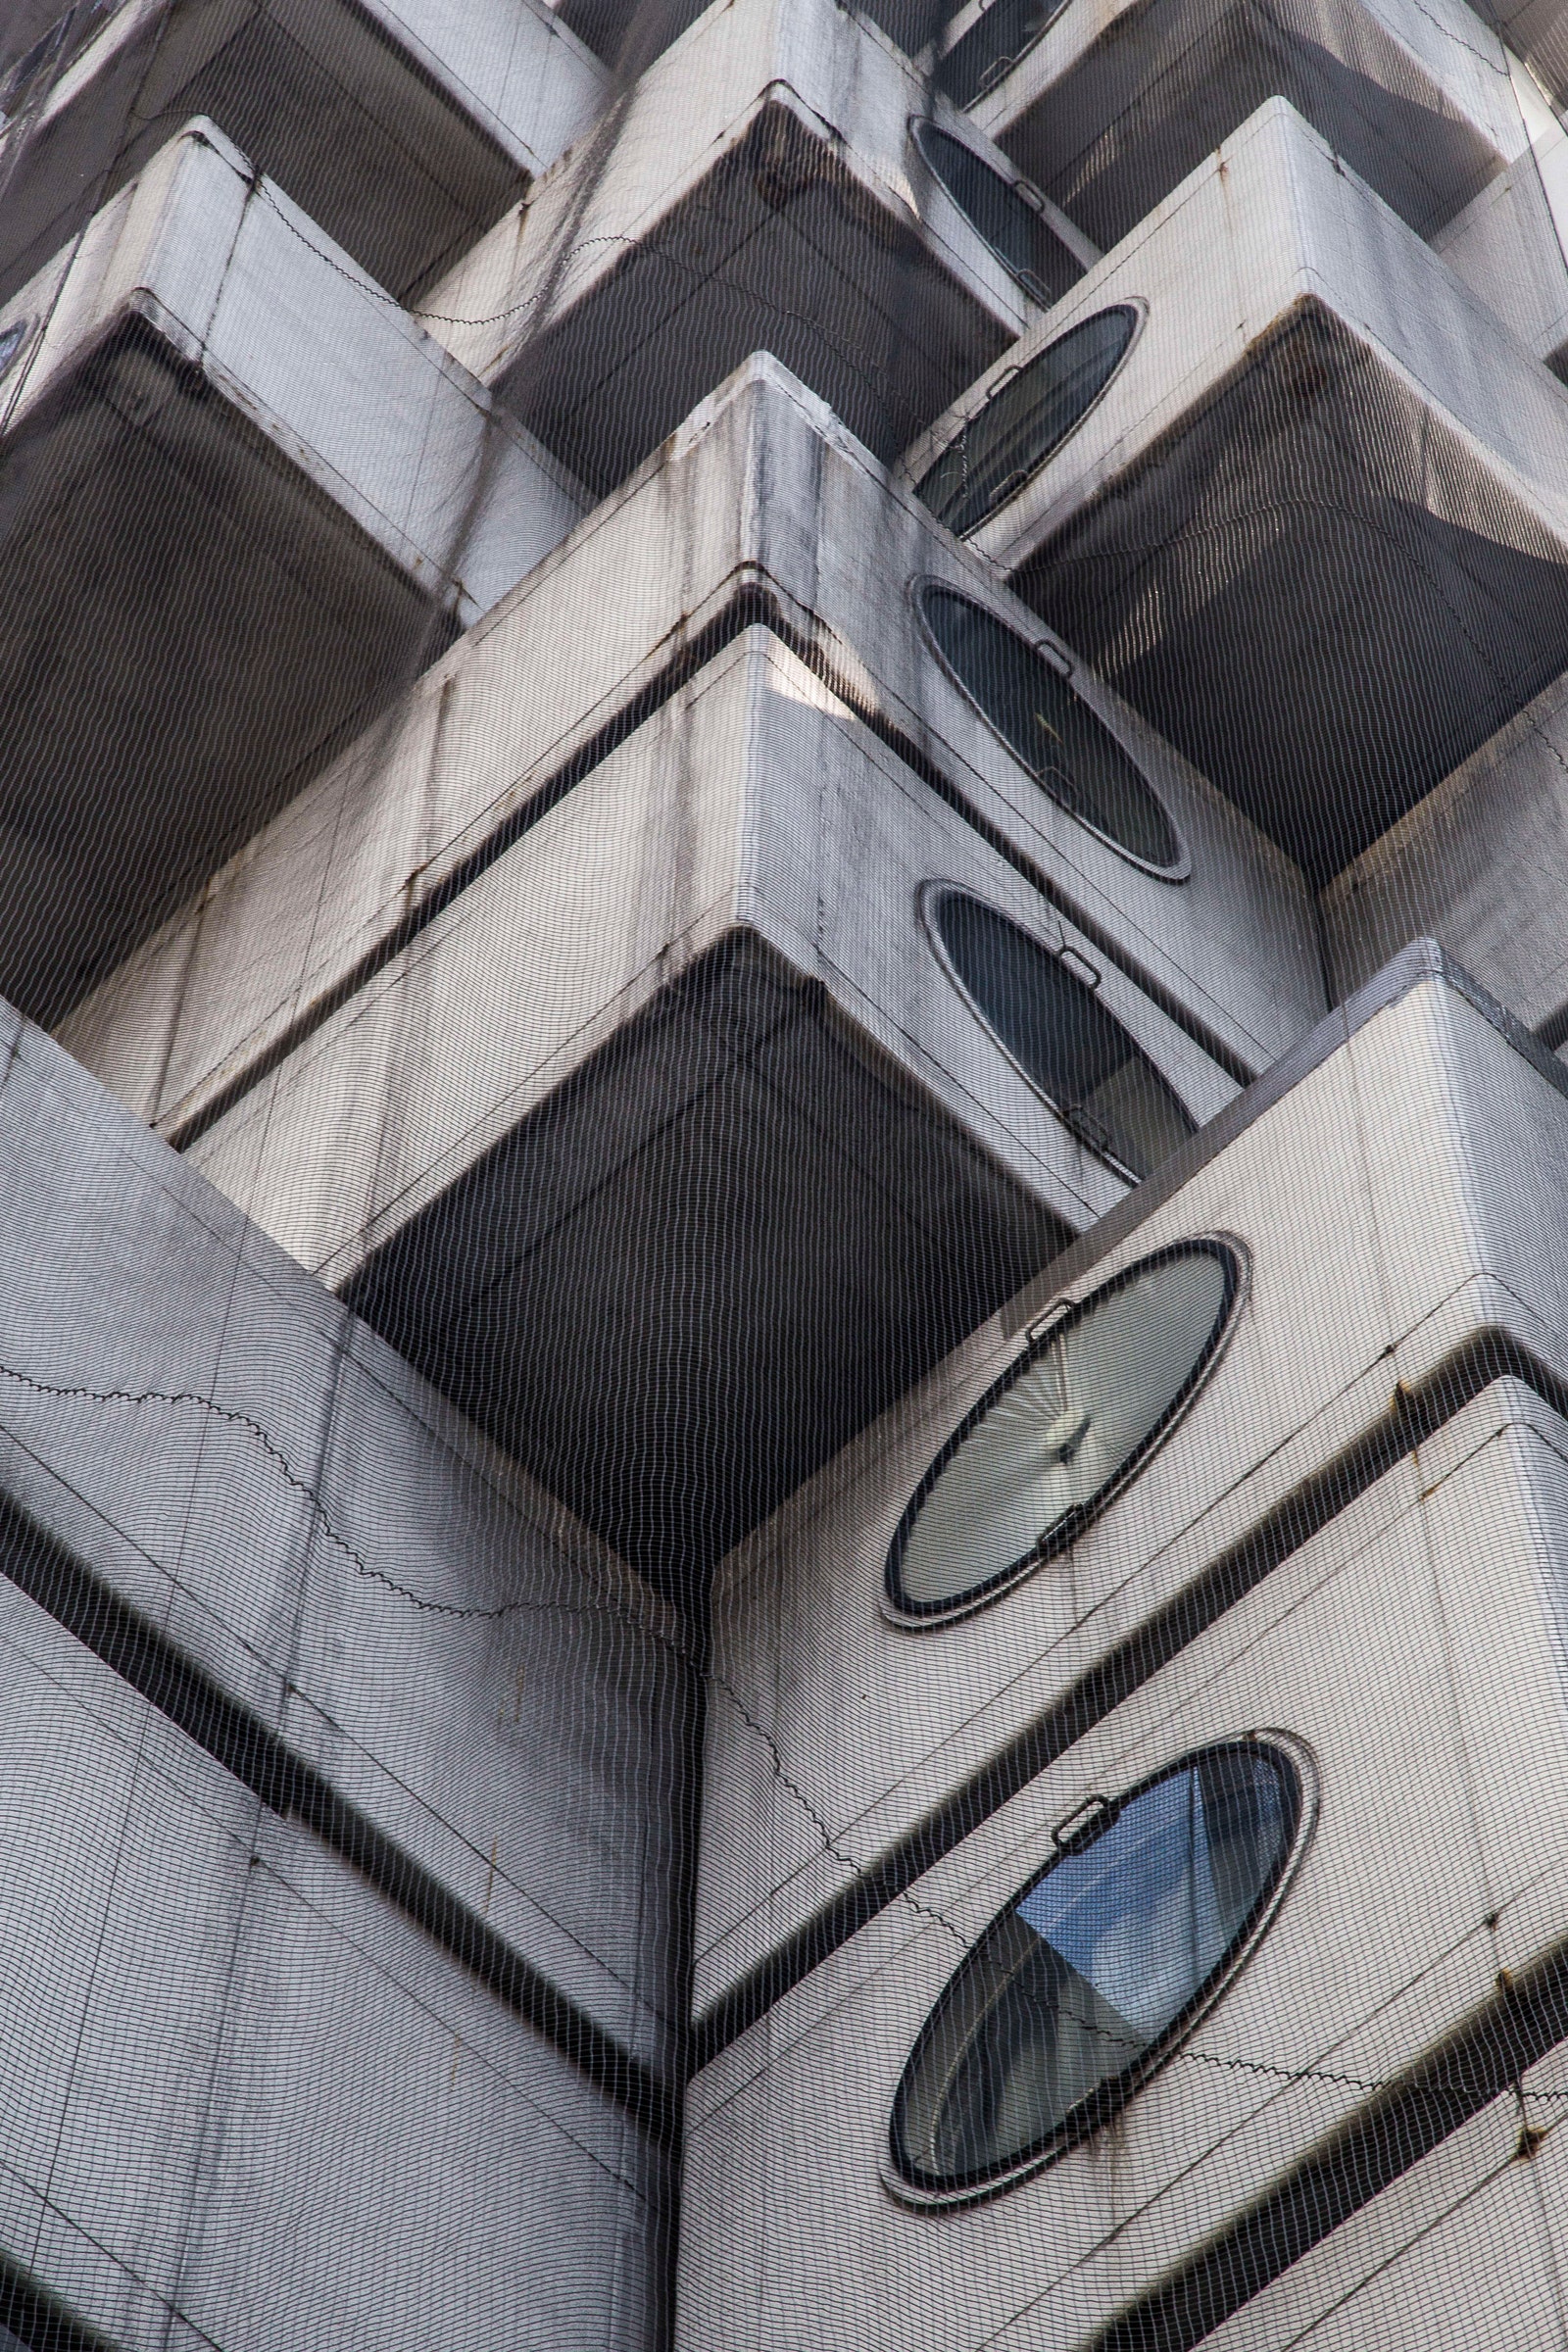 Домлегенда капсульная башня Накагин в Токио